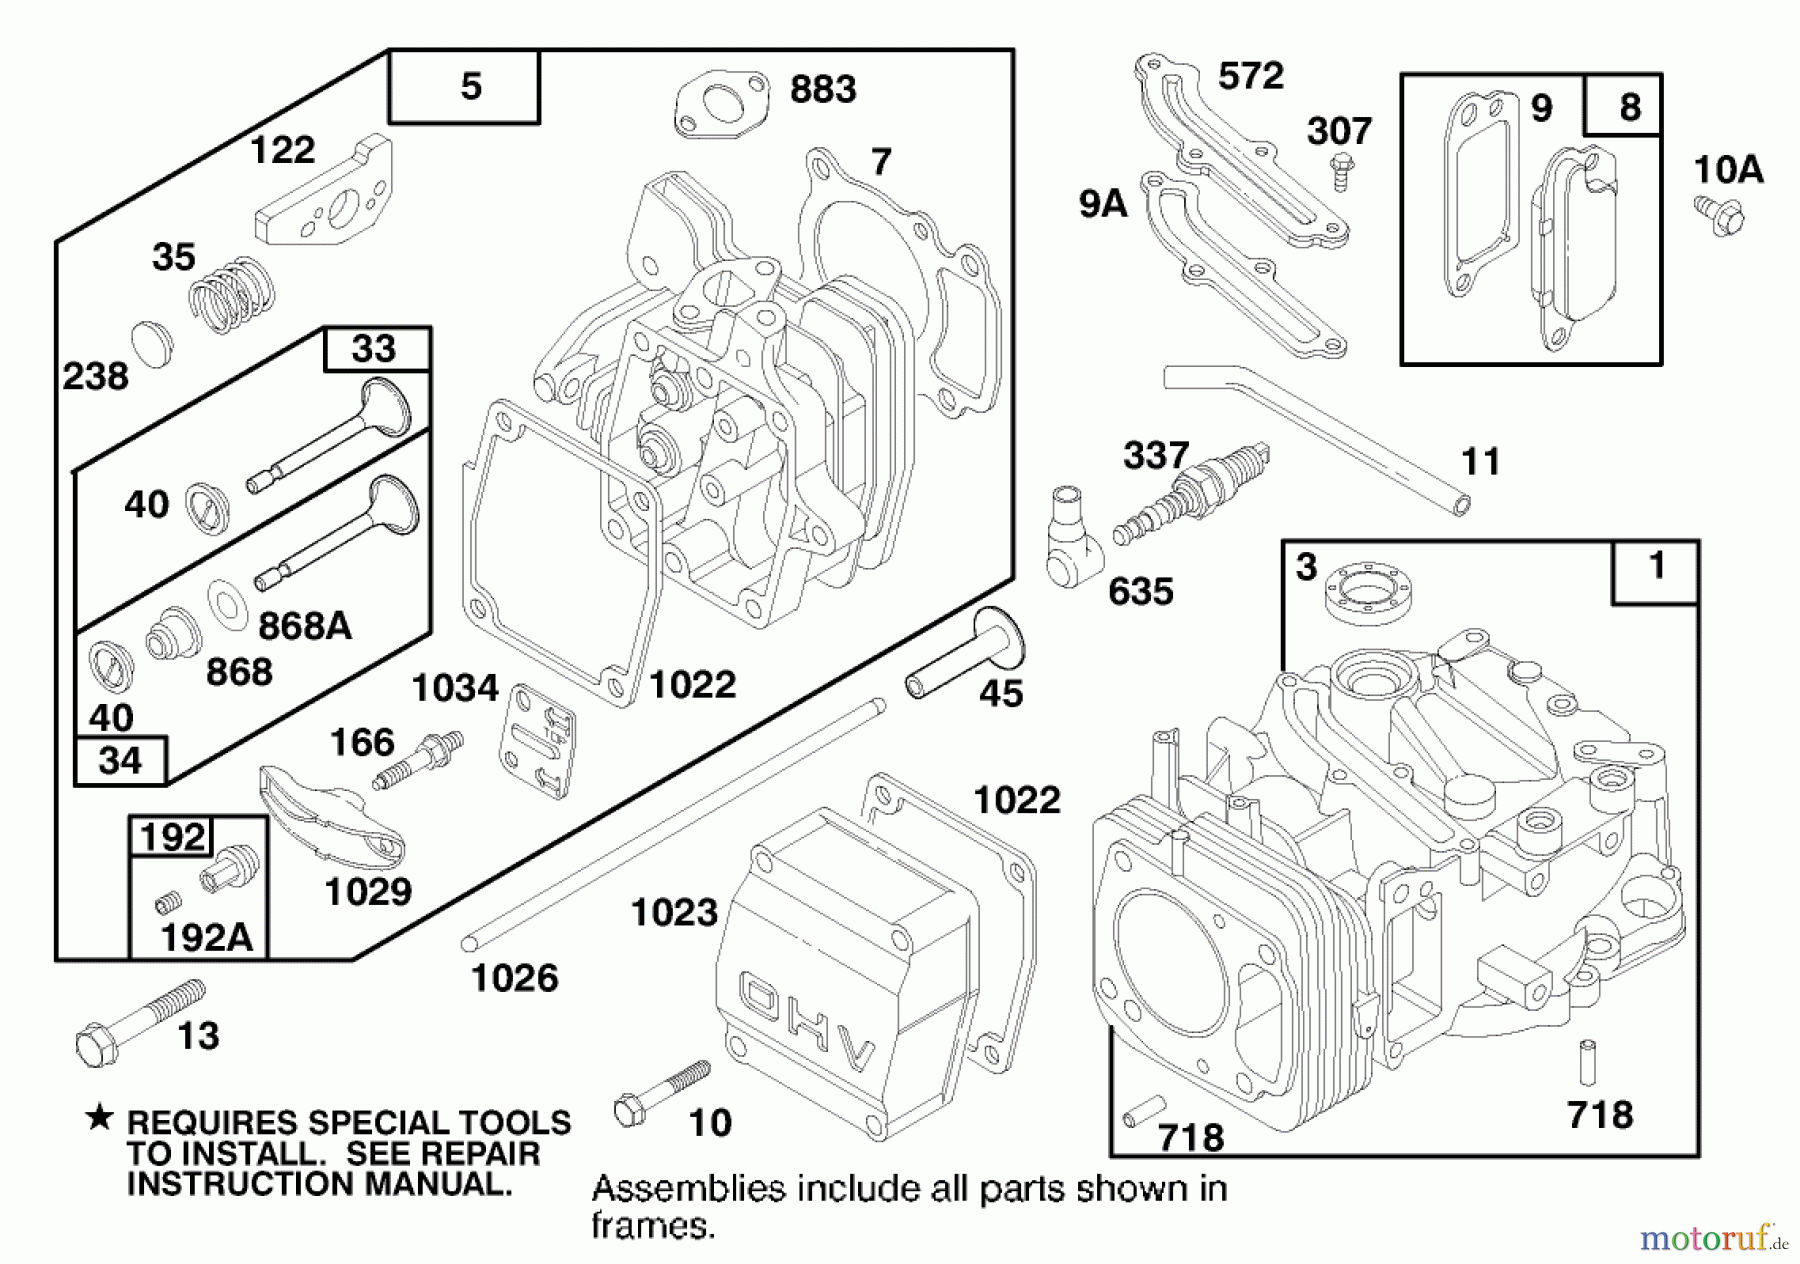  Toro Neu Mowers, Walk-Behind Seite 1 20474 - Toro Super Recycler Lawnmower, 1996 (6900001-6999999) ENGINE GTS 150 #1